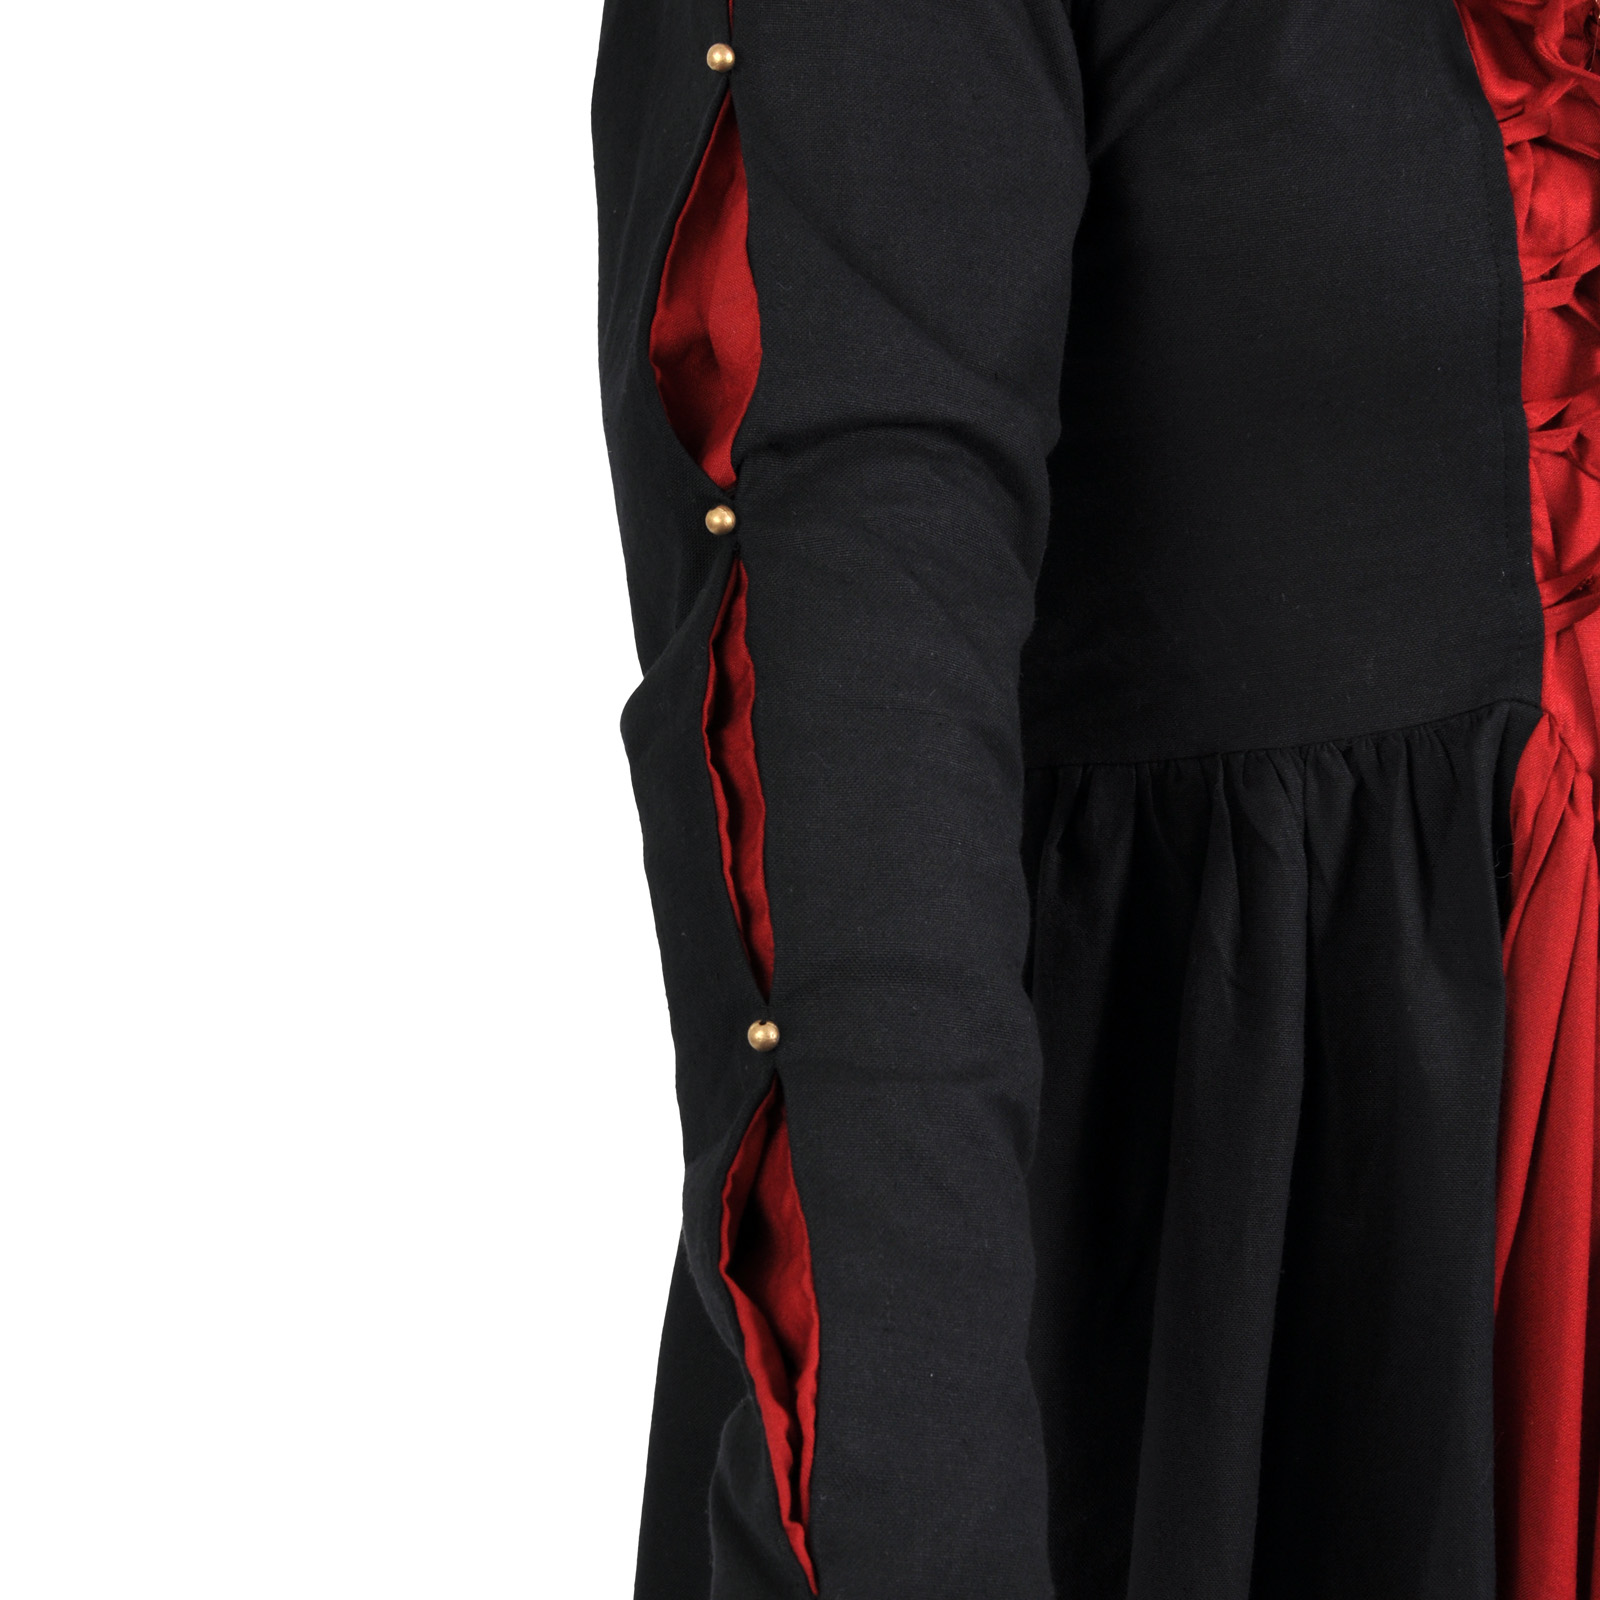 Robe Médiévale Orianne Noir-Rouge